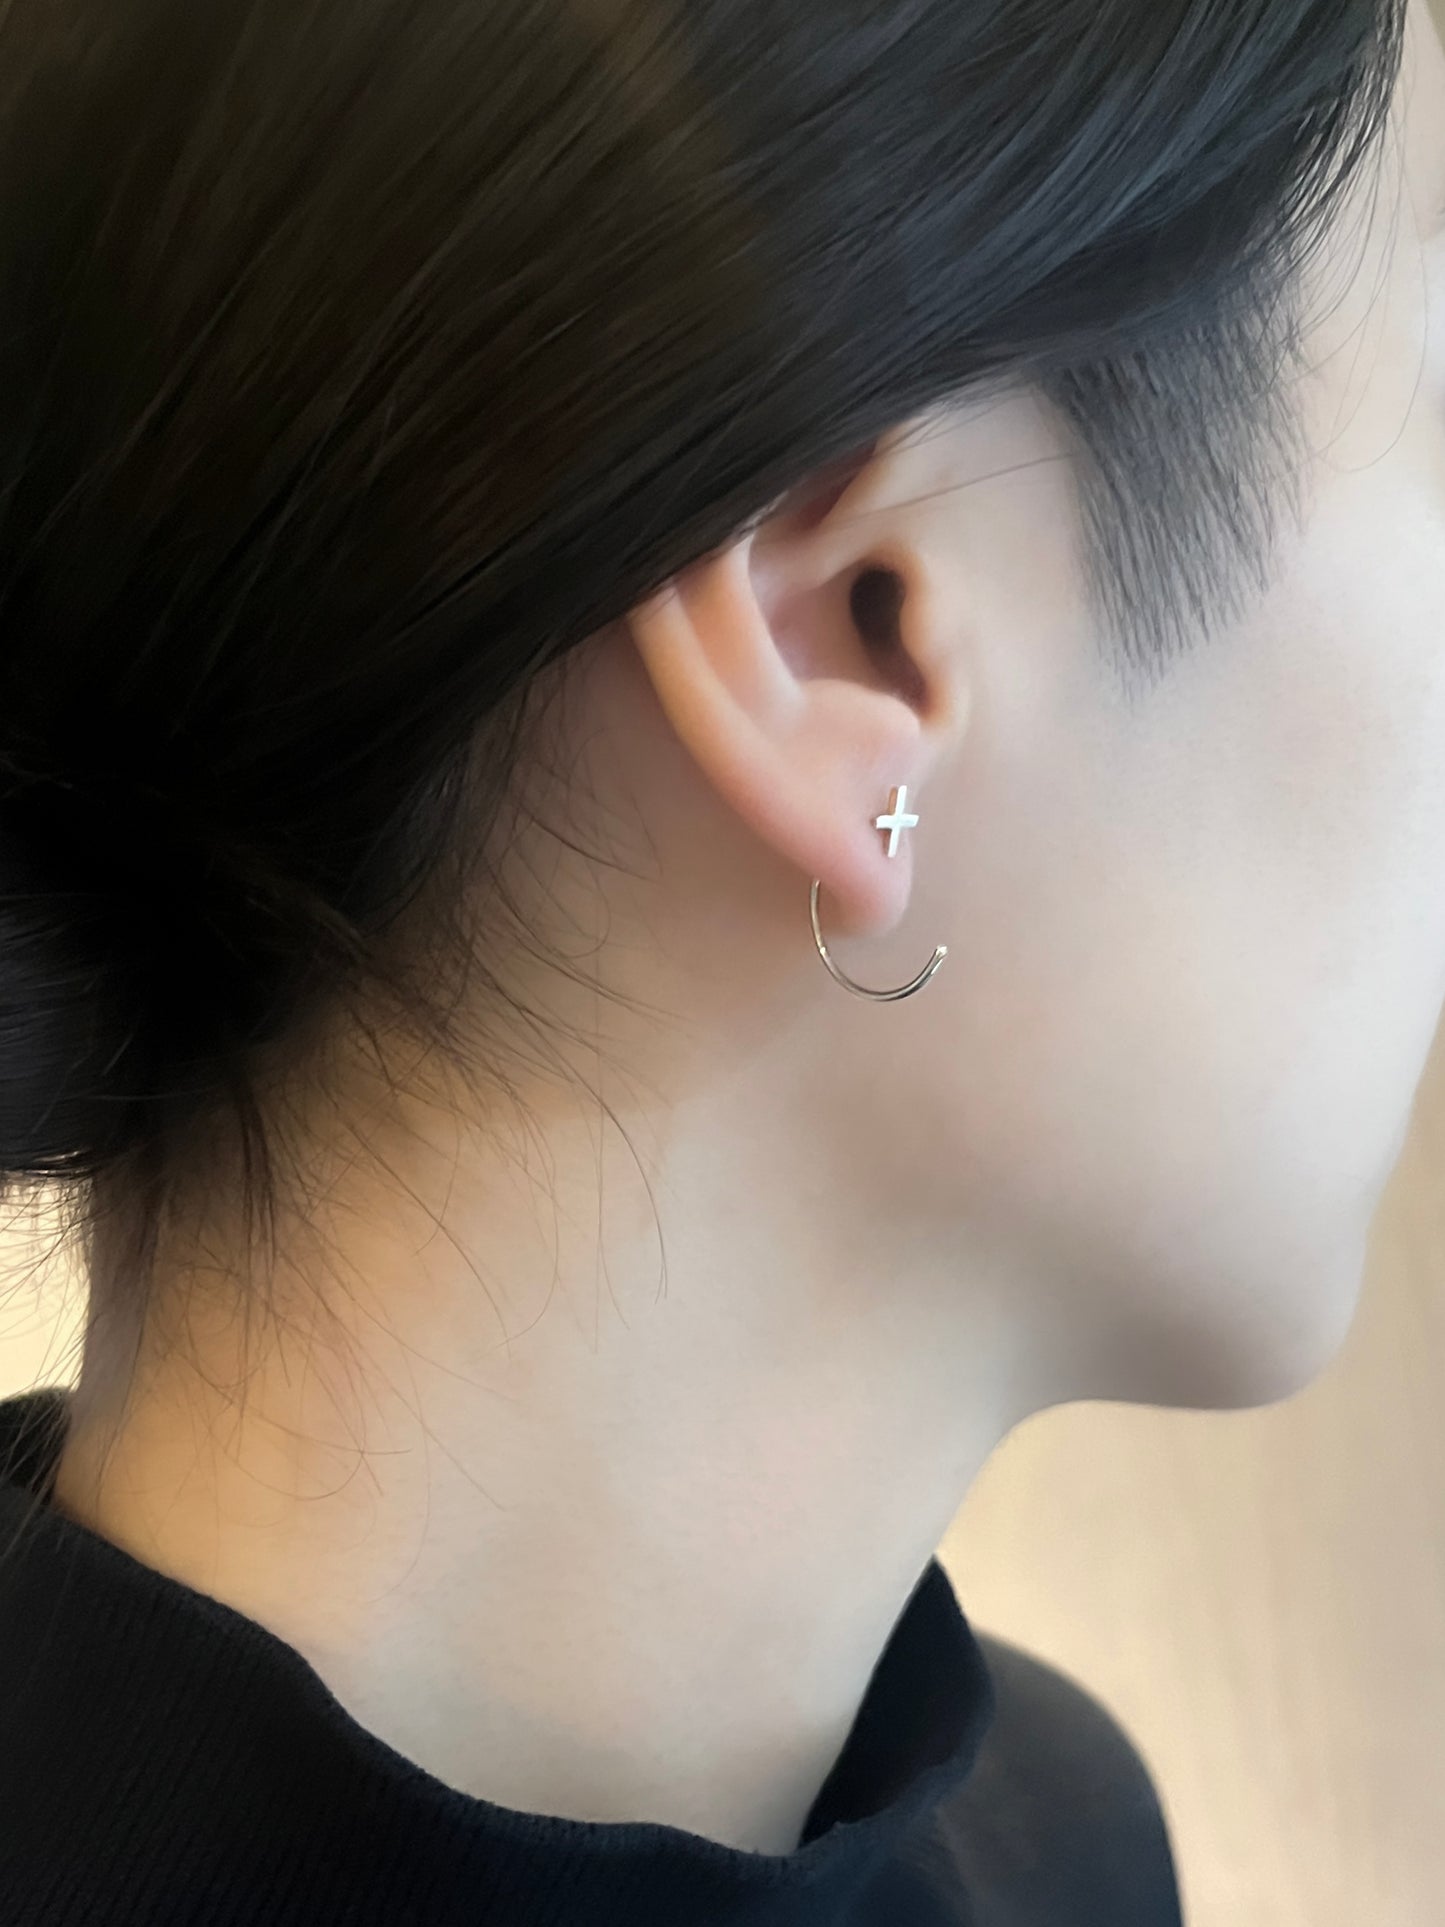 cross | クロス | Pierced earrings | Sterling Silver | Small